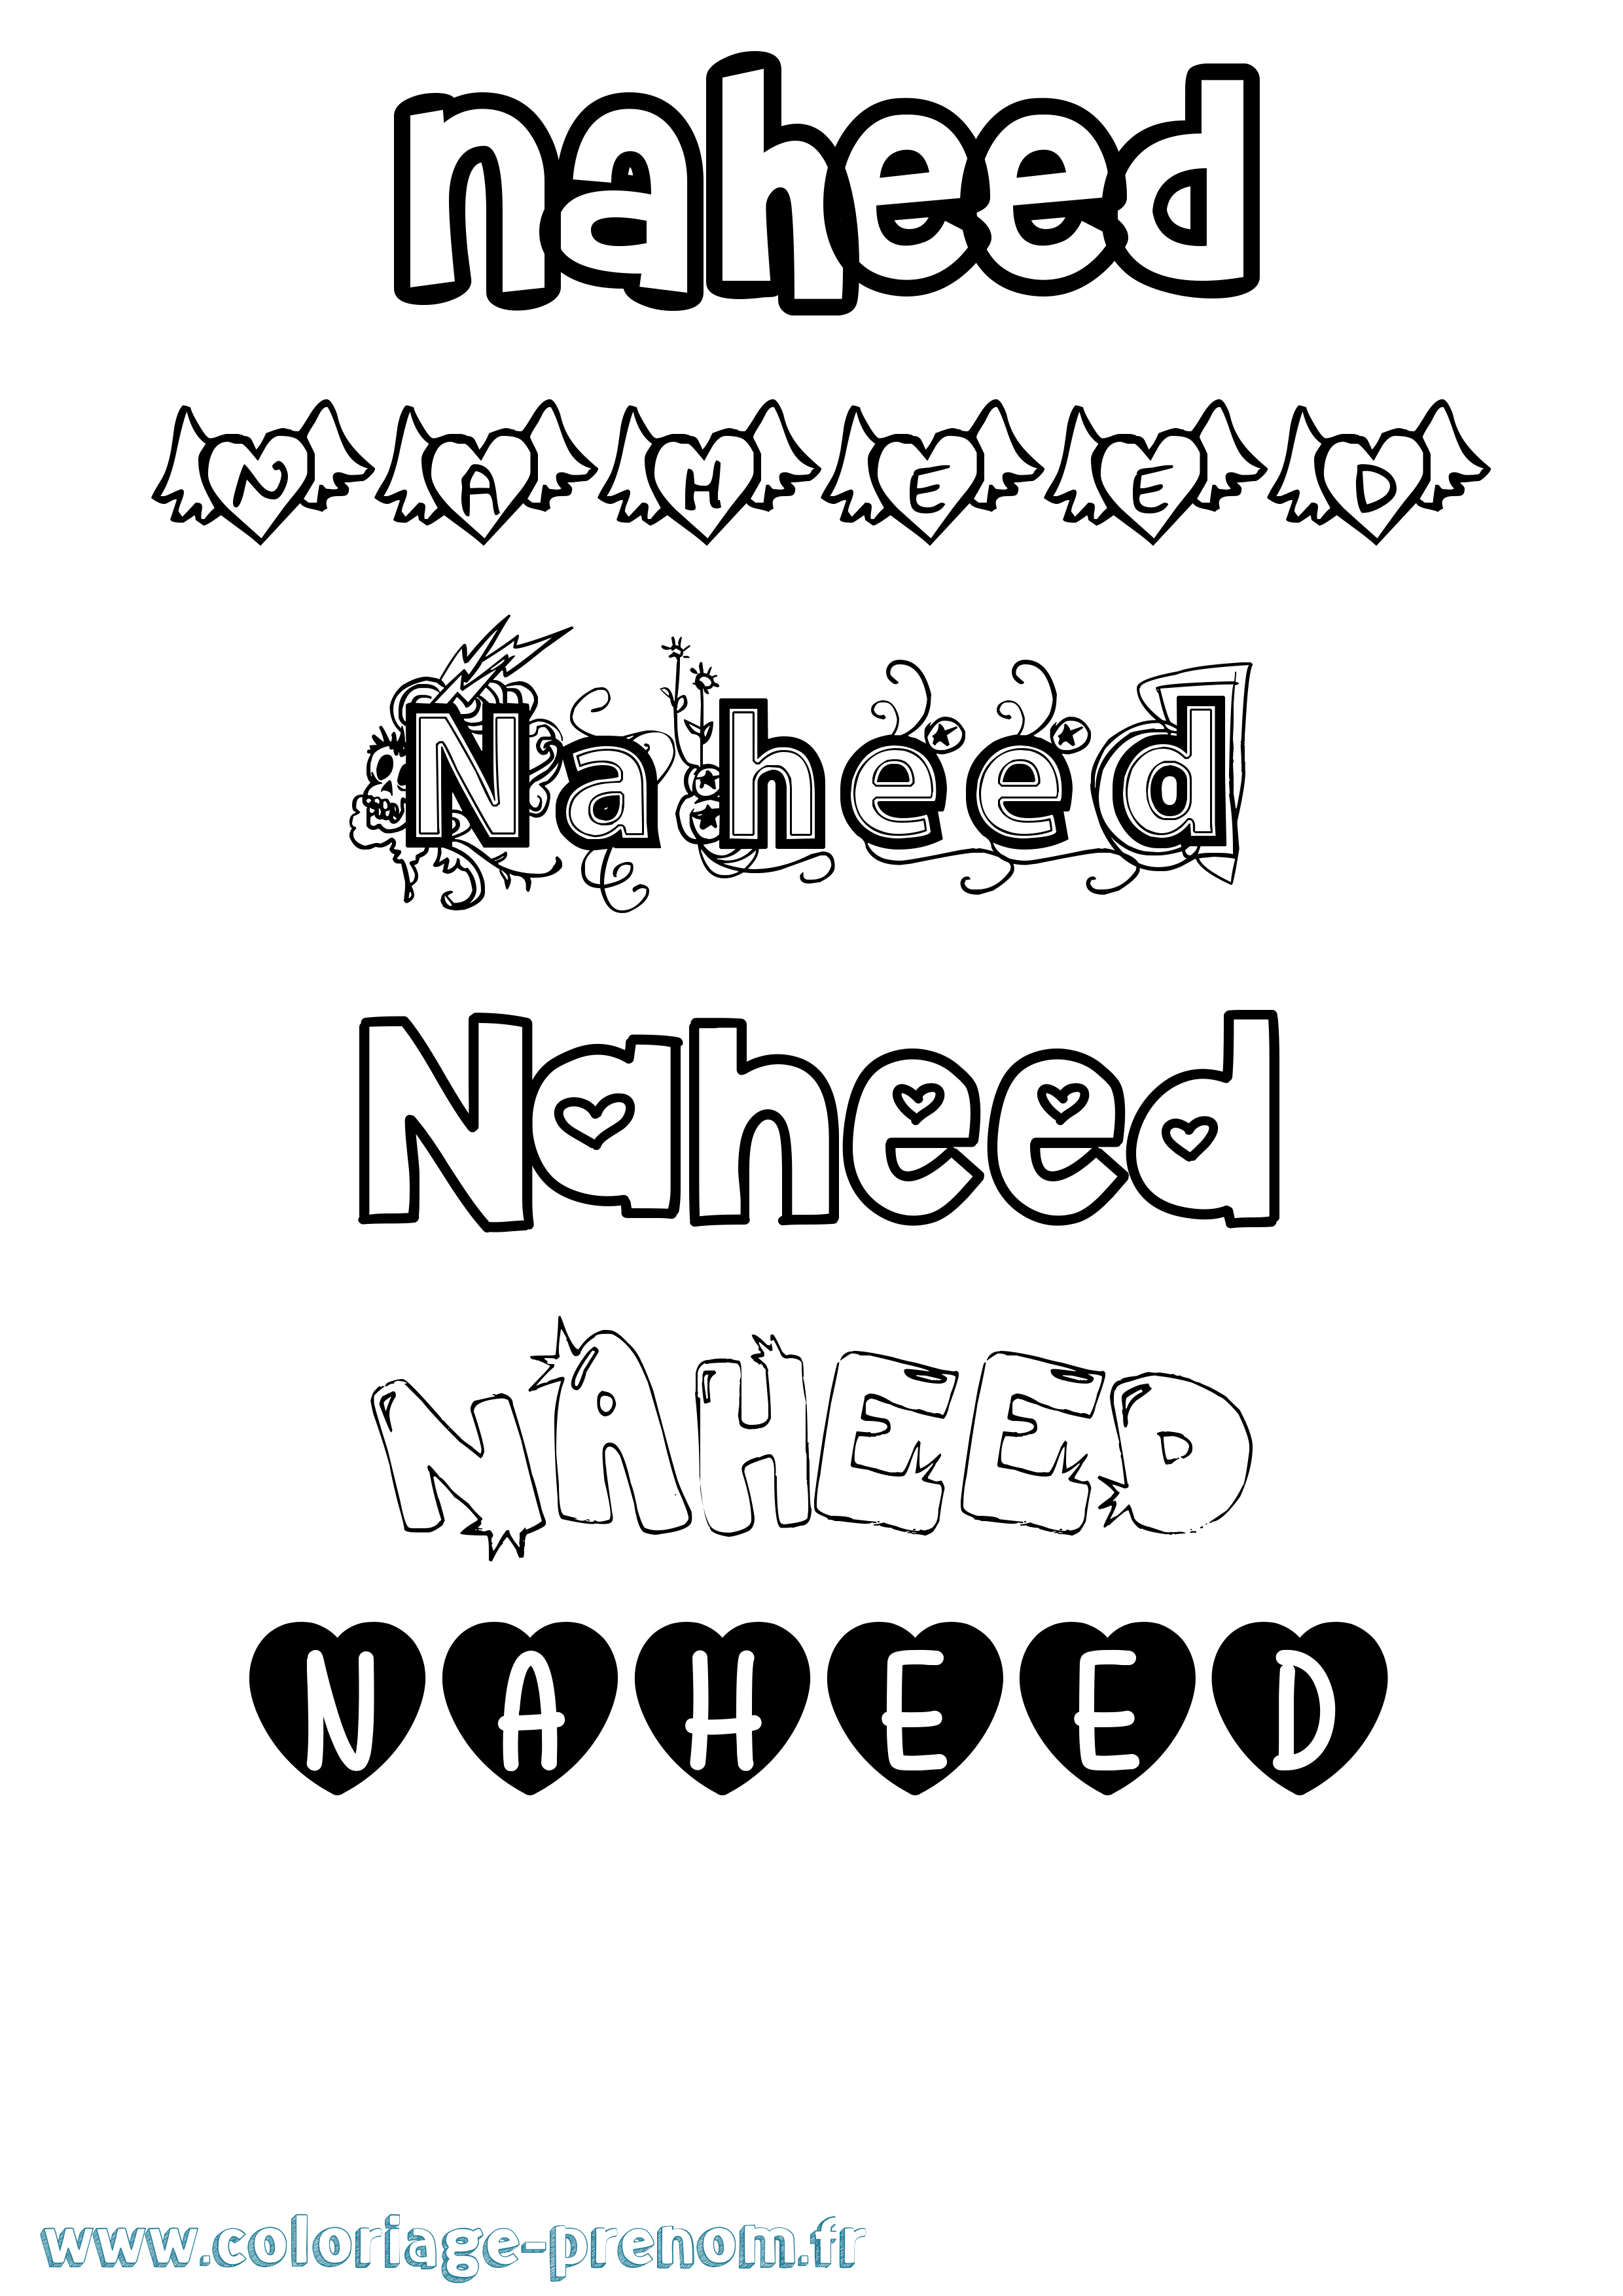 Coloriage prénom Naheed Girly